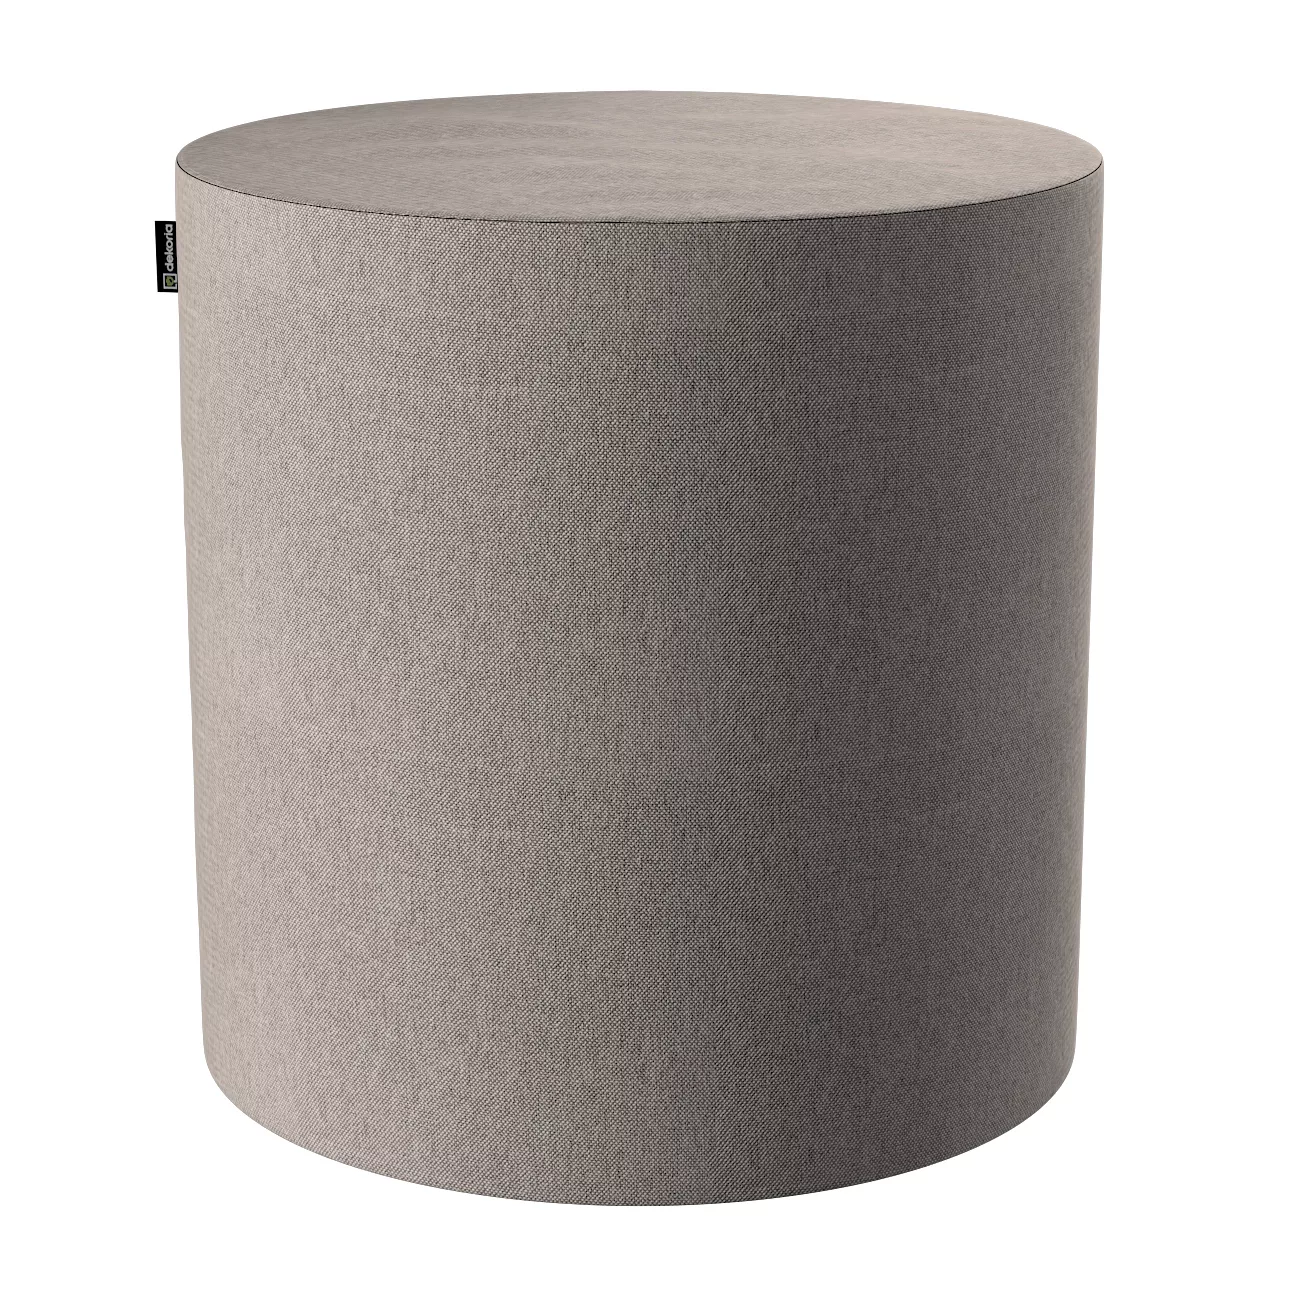 Pouf Barrel, beige-grau, ø40 cm x 40 cm, Etna (705-09) günstig online kaufen